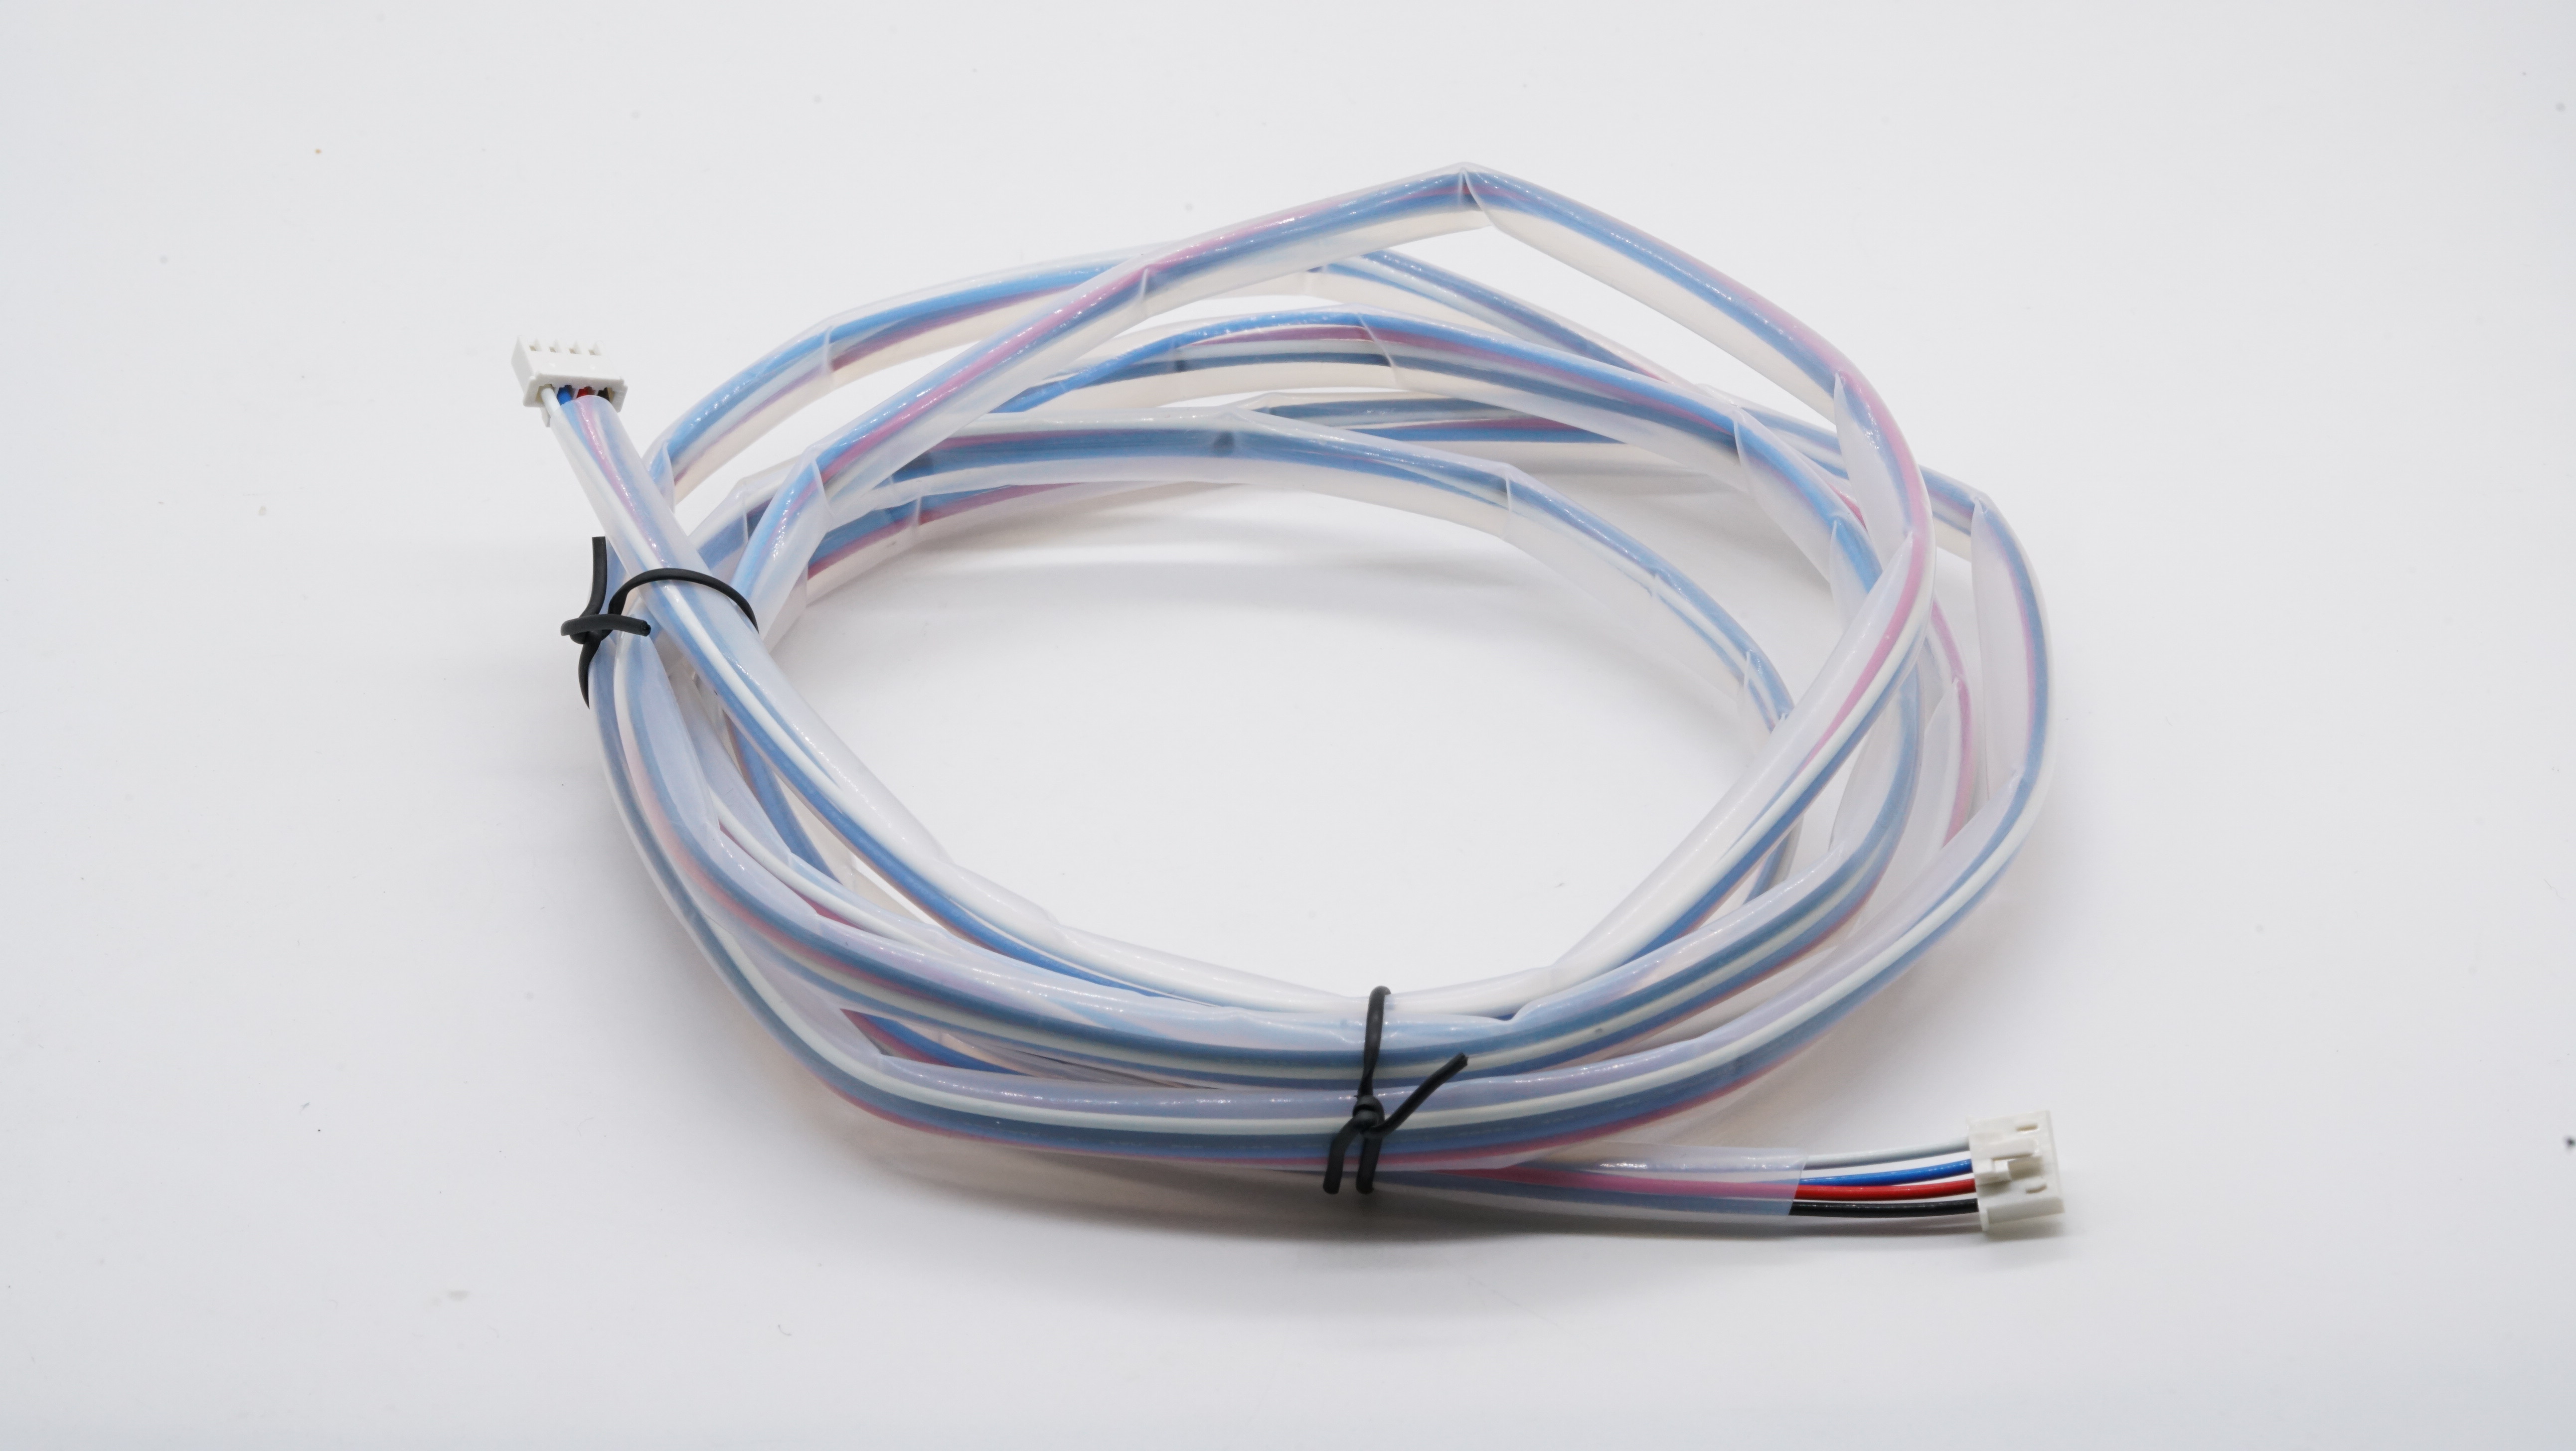 XHB 2.54 con mazo de cables de conector de hebilla